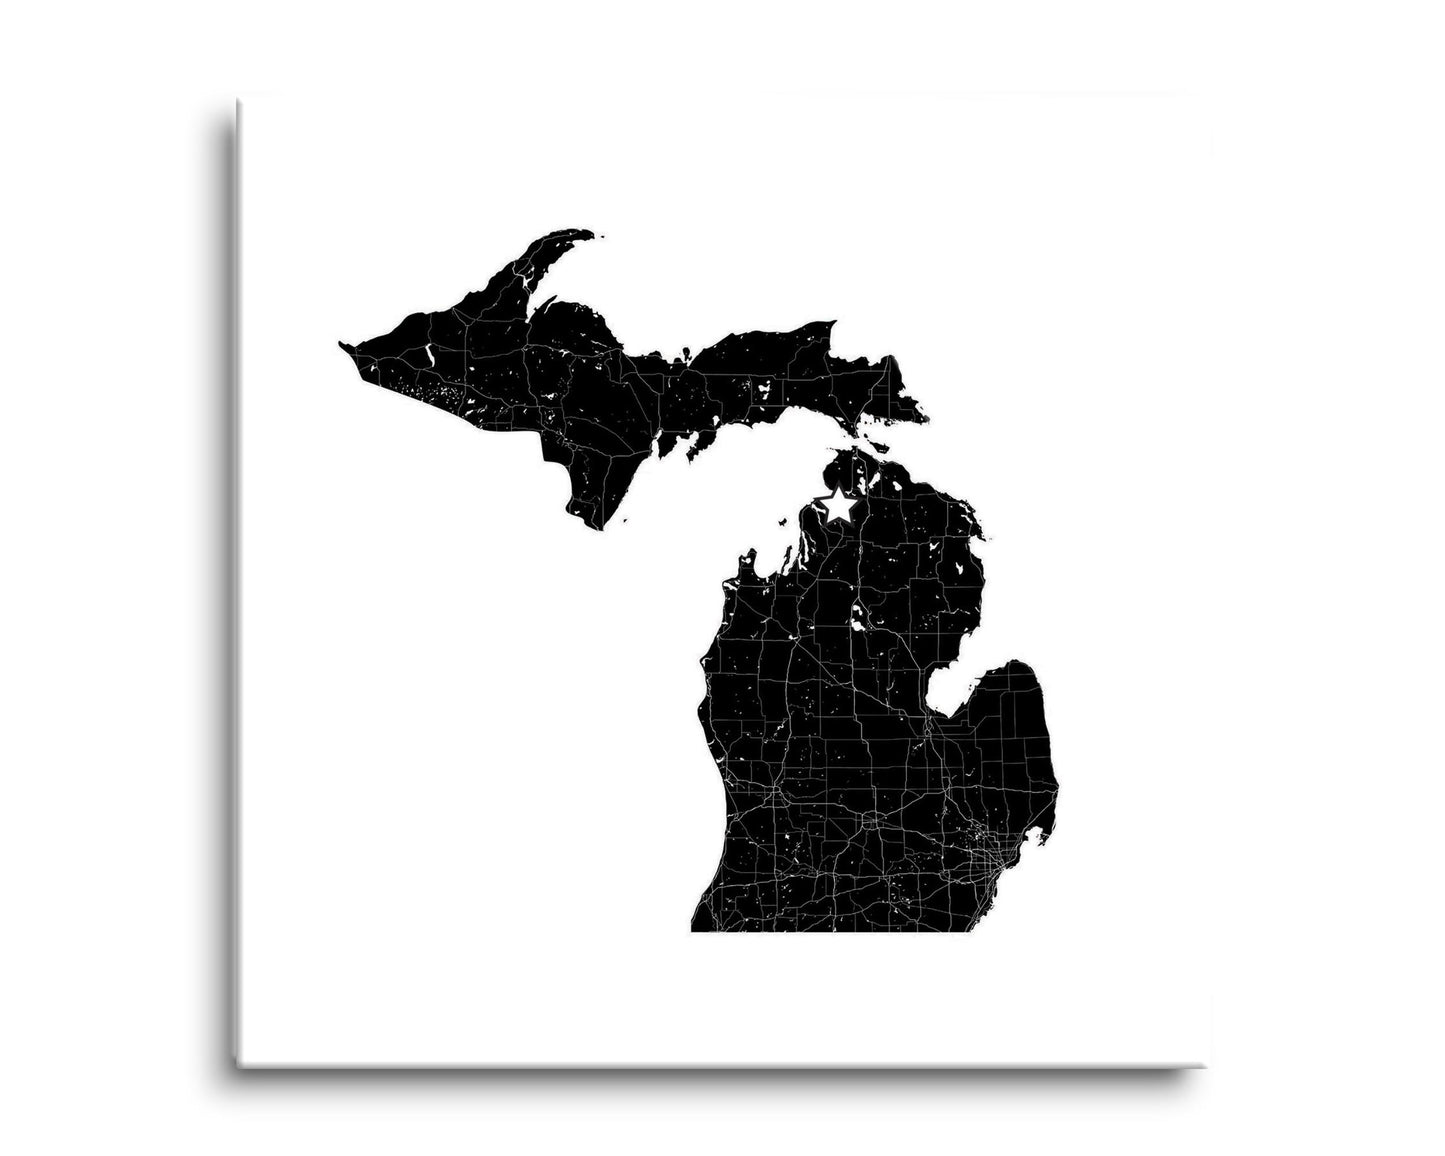 Minimalistic B&W Michigan Map Petoskey Star | Hi-Def Glass Art | Eaches | Min 2